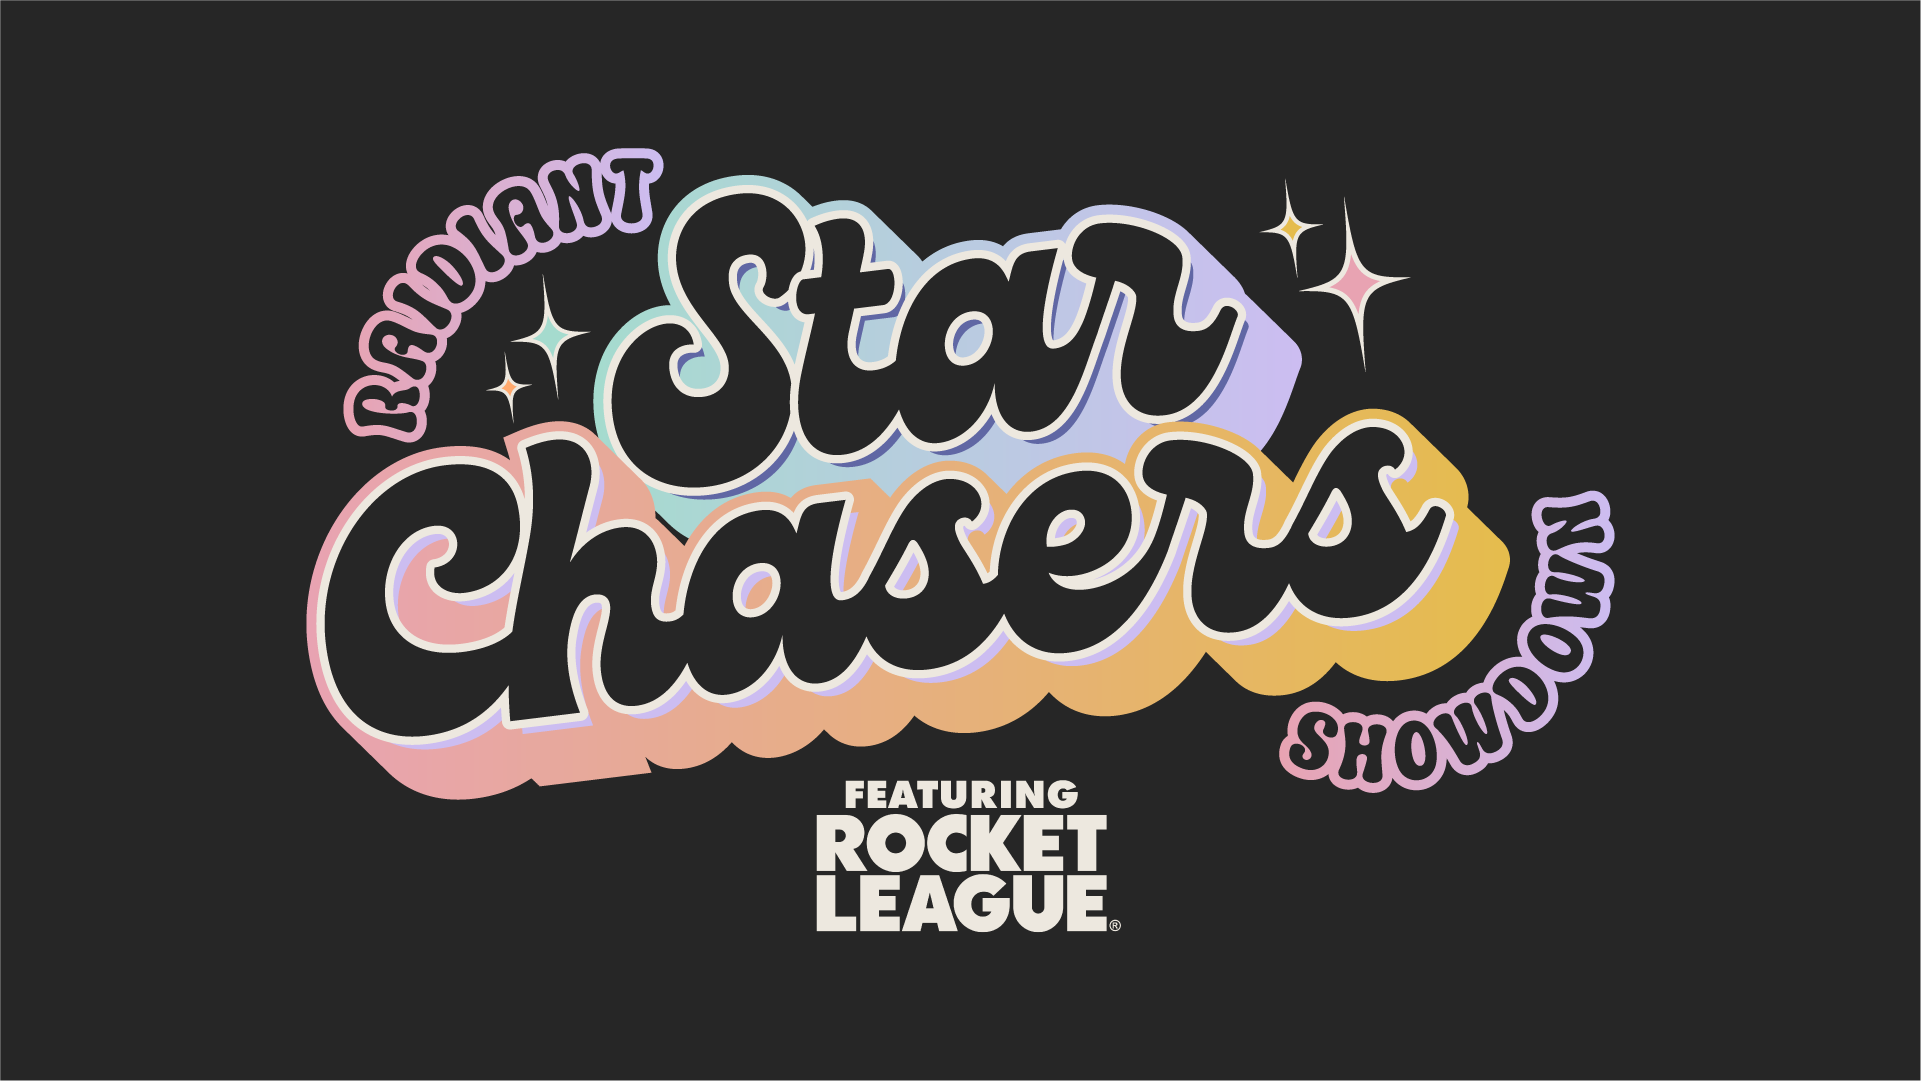 Raidiant Announces "Star Chasers Showdown", a $30k Rocket League Tournament